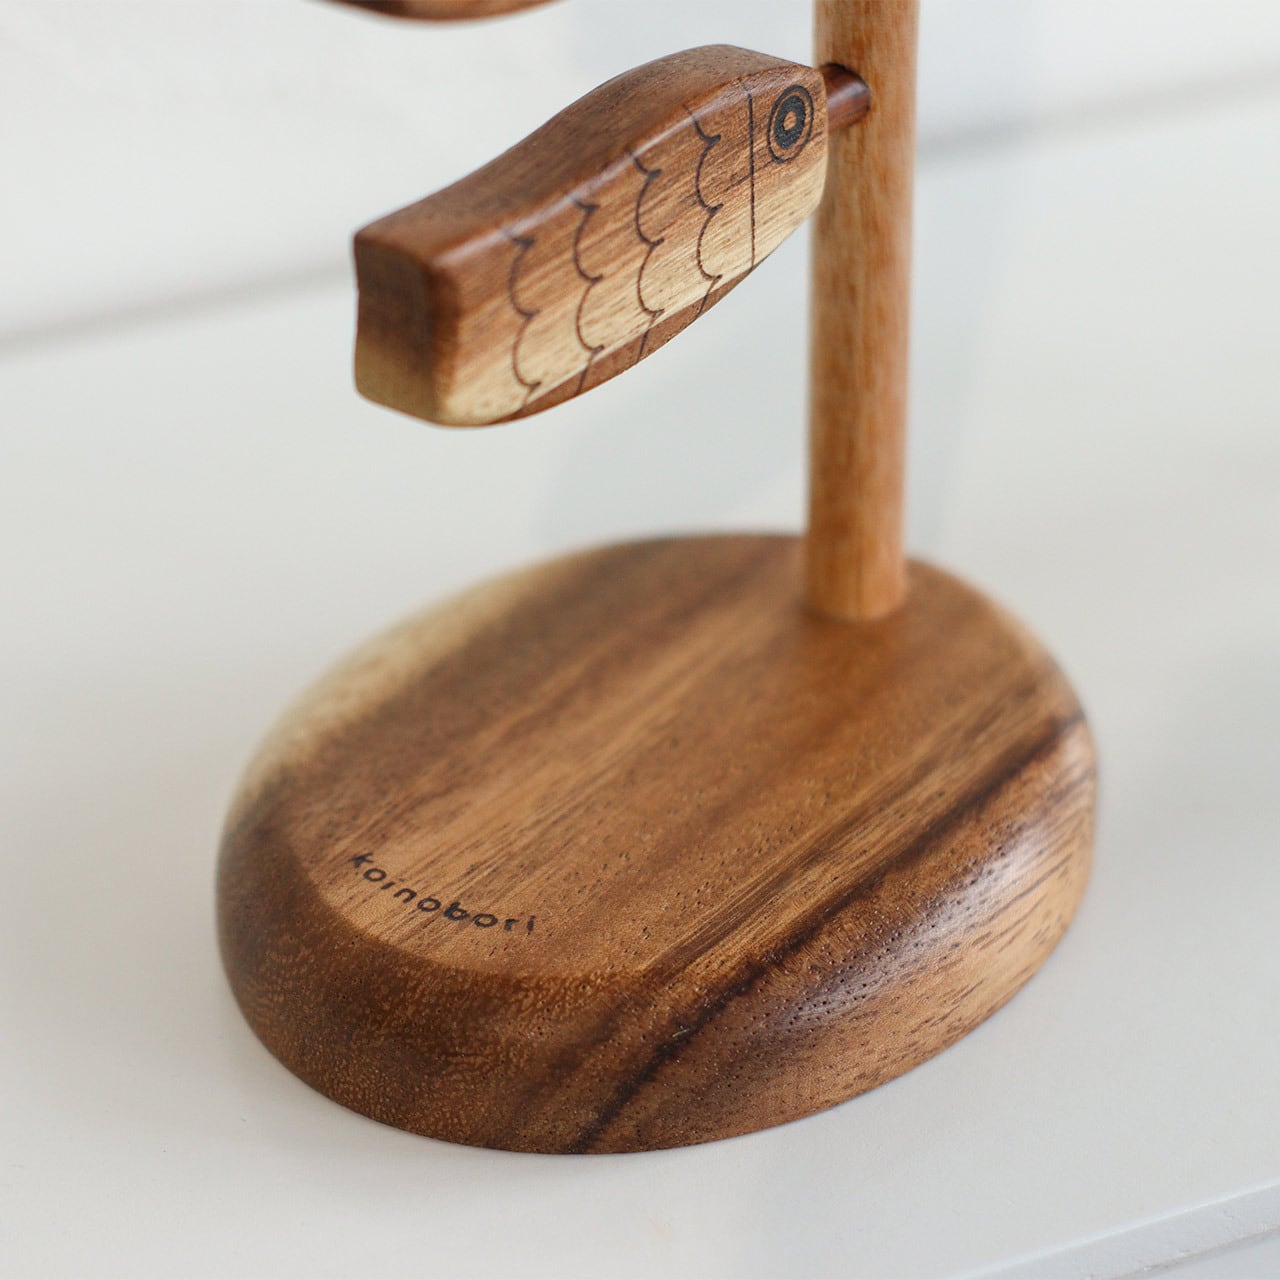 Koinobori wooden objects